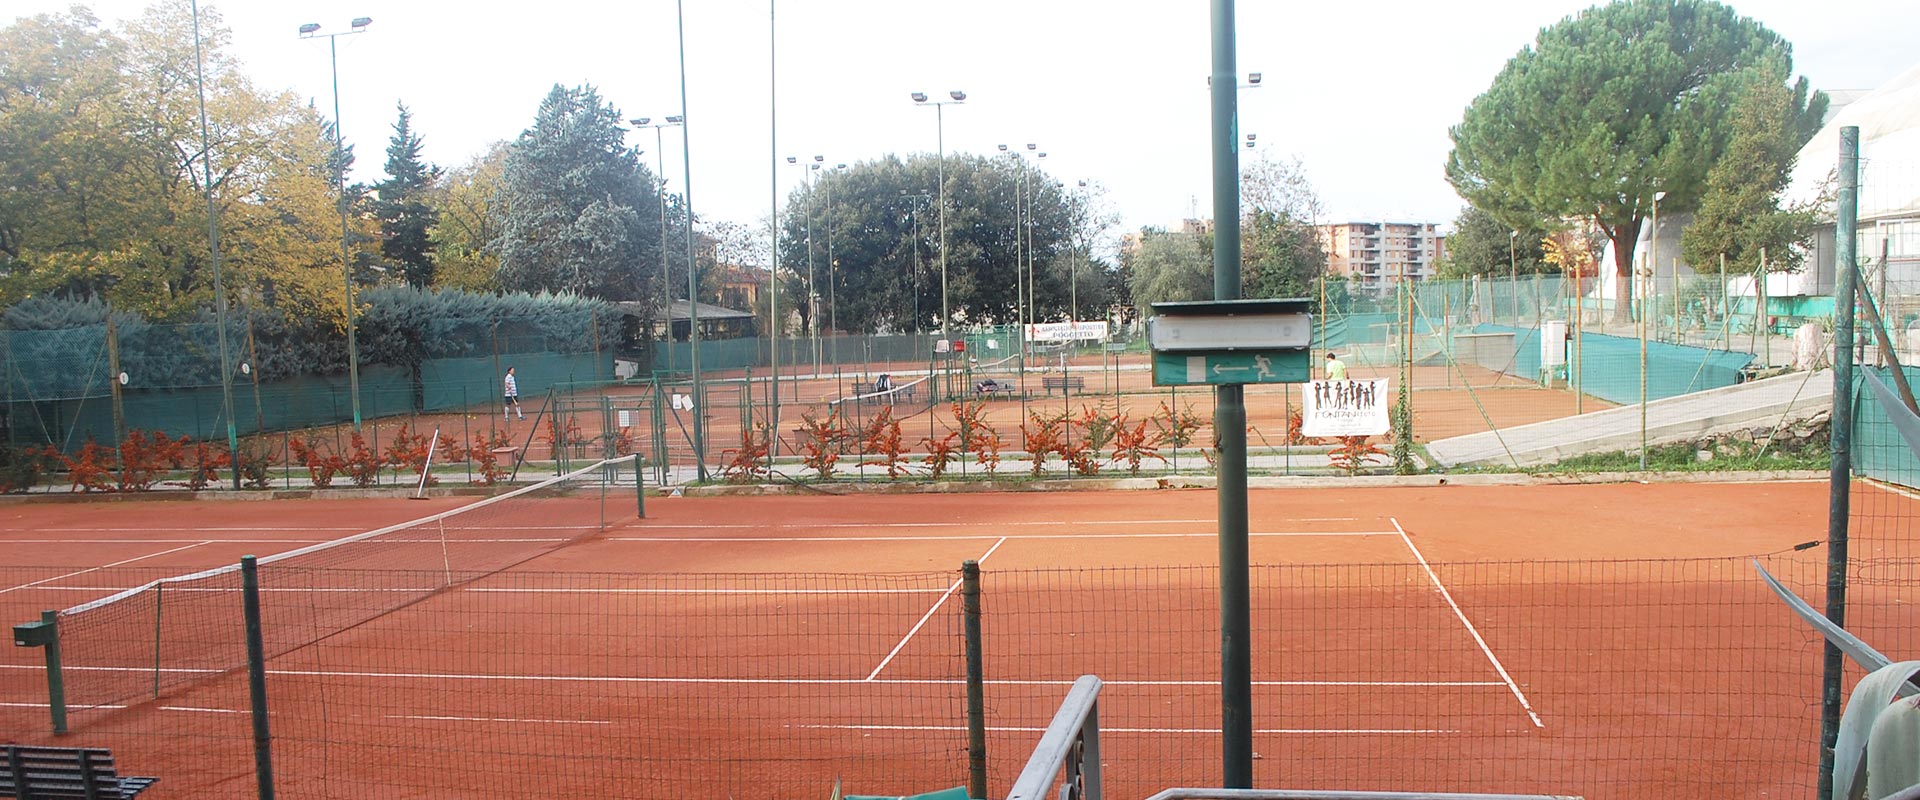 campi tennis poggetto